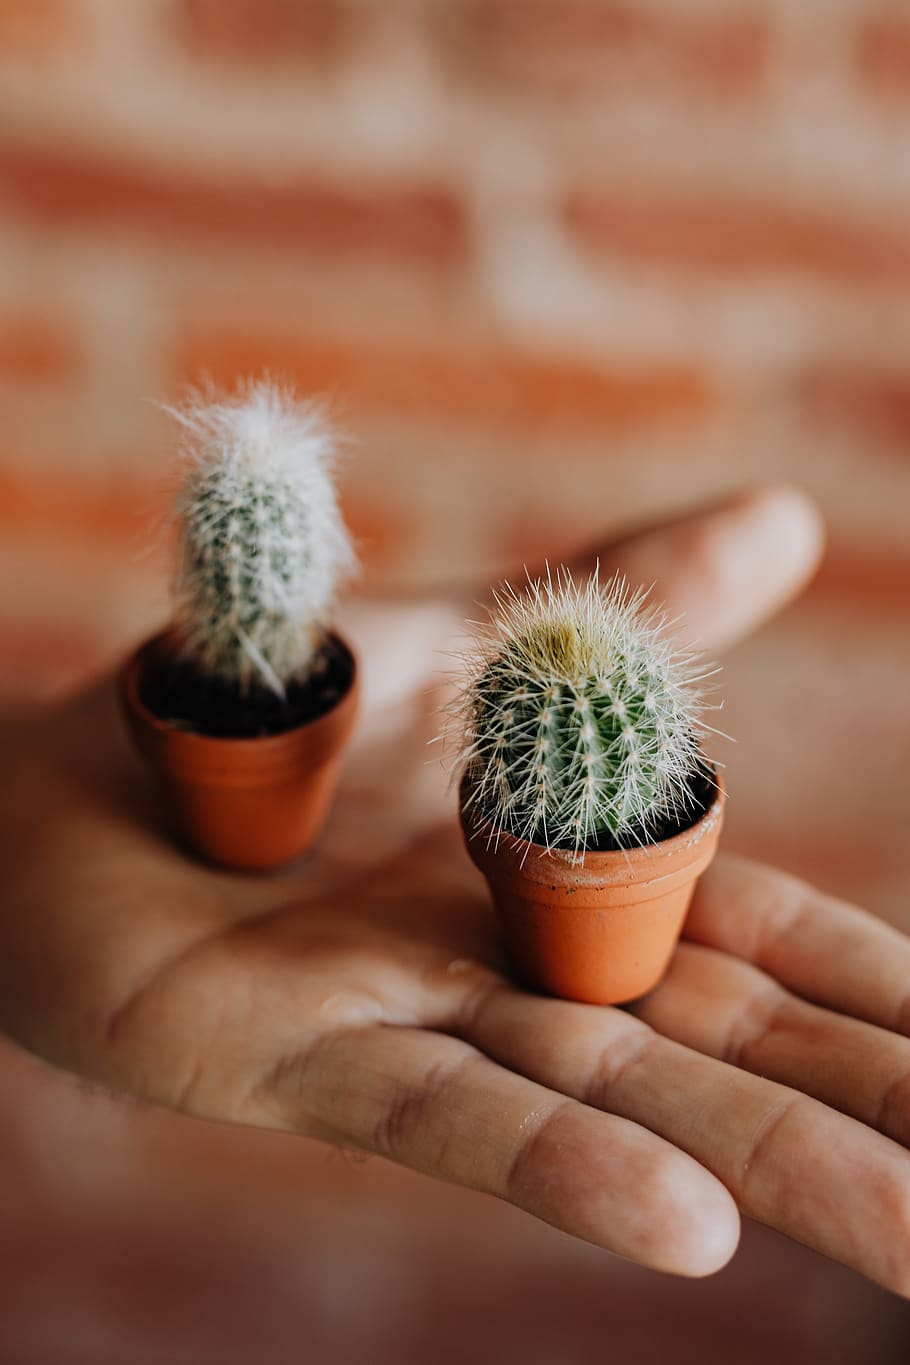 cactus, miniaturas, planta, maceta, miniatura, arcilla, macetas, mano humana, mano, parte del cuerpo humano